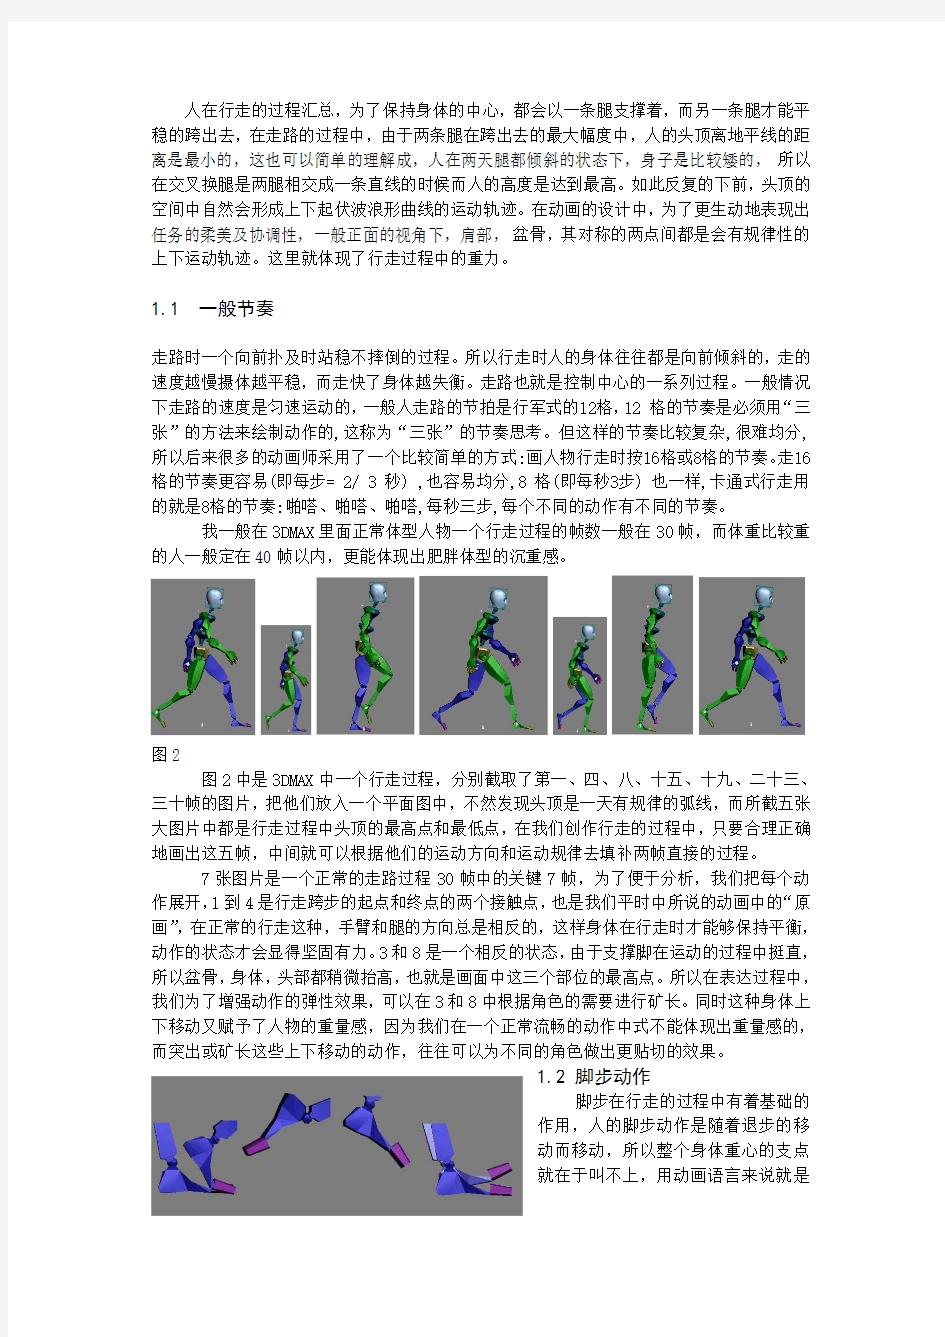 解析人行走的动画技法